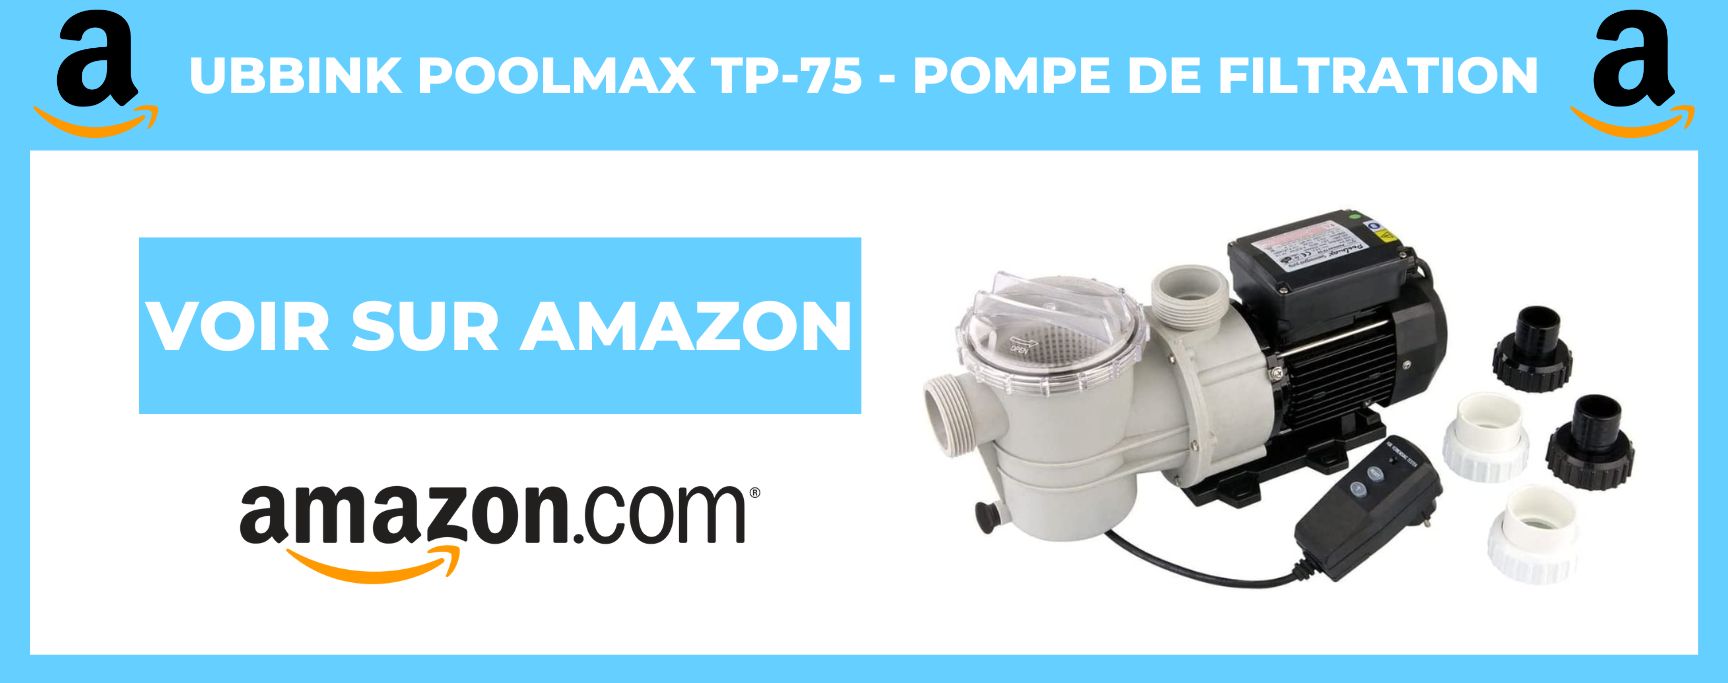 Ubbink Poolmax TP-75 - Pompe de Filtration